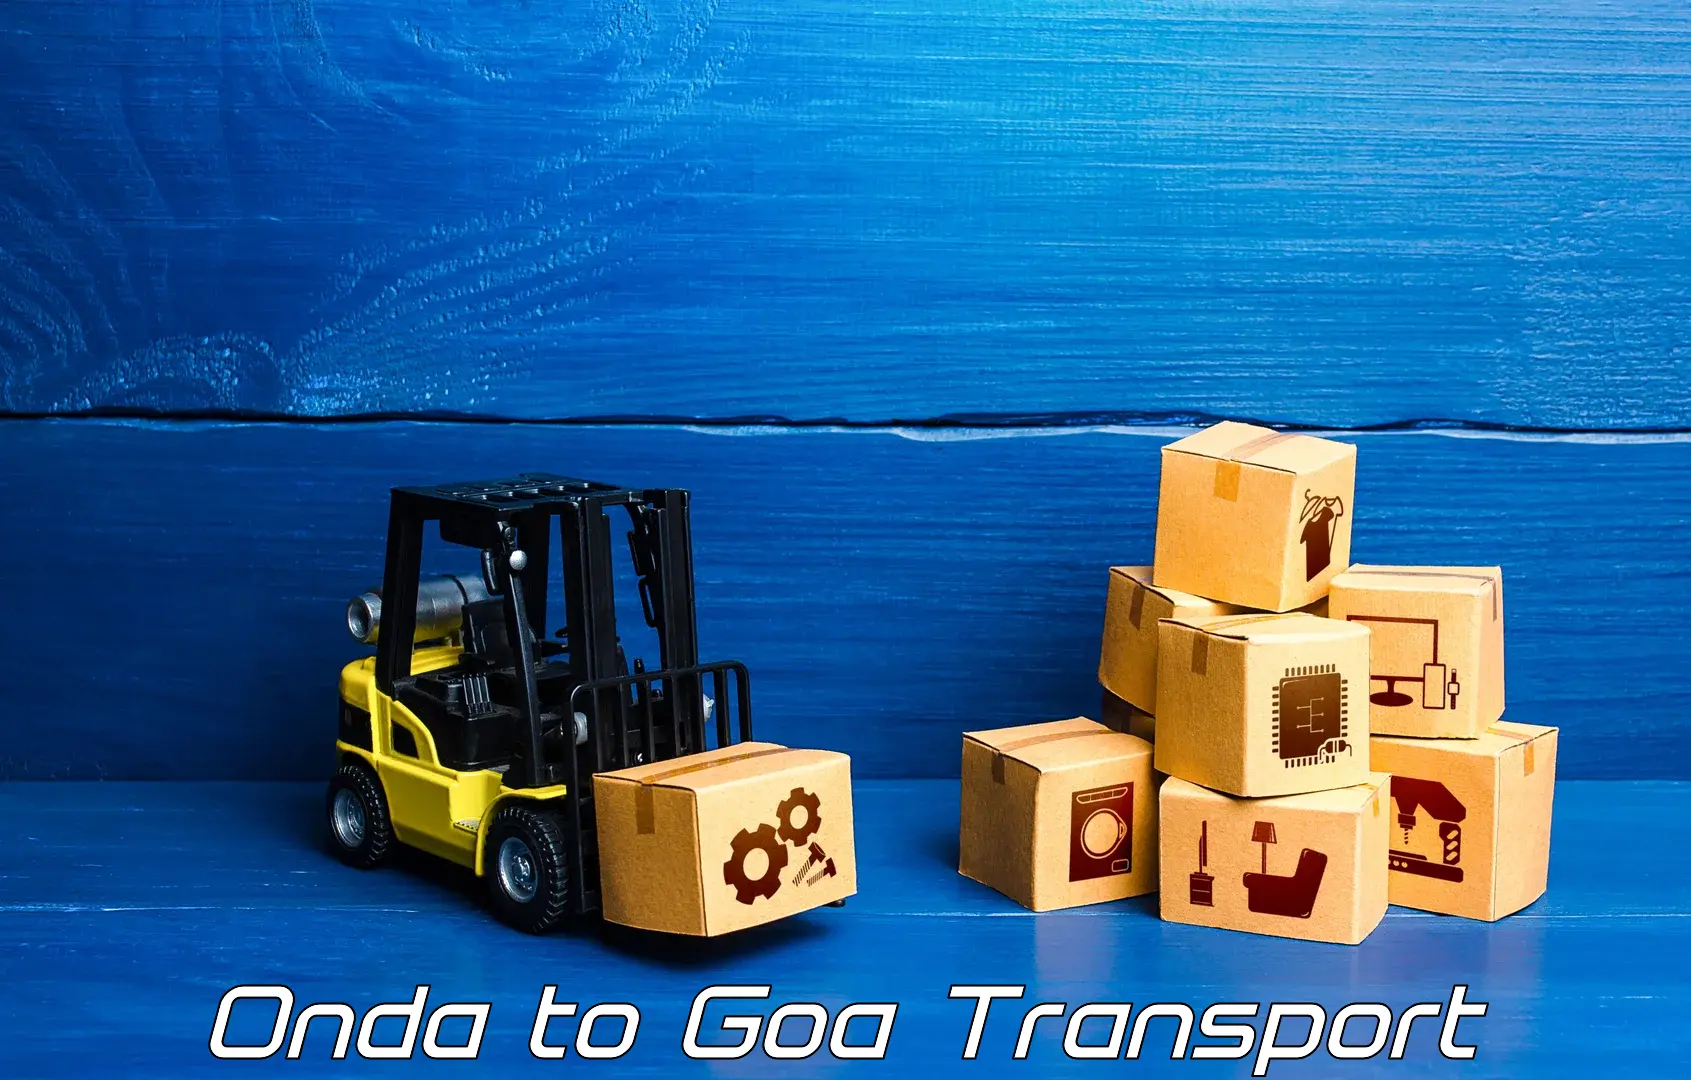 Door to door transport services in Onda to South Goa